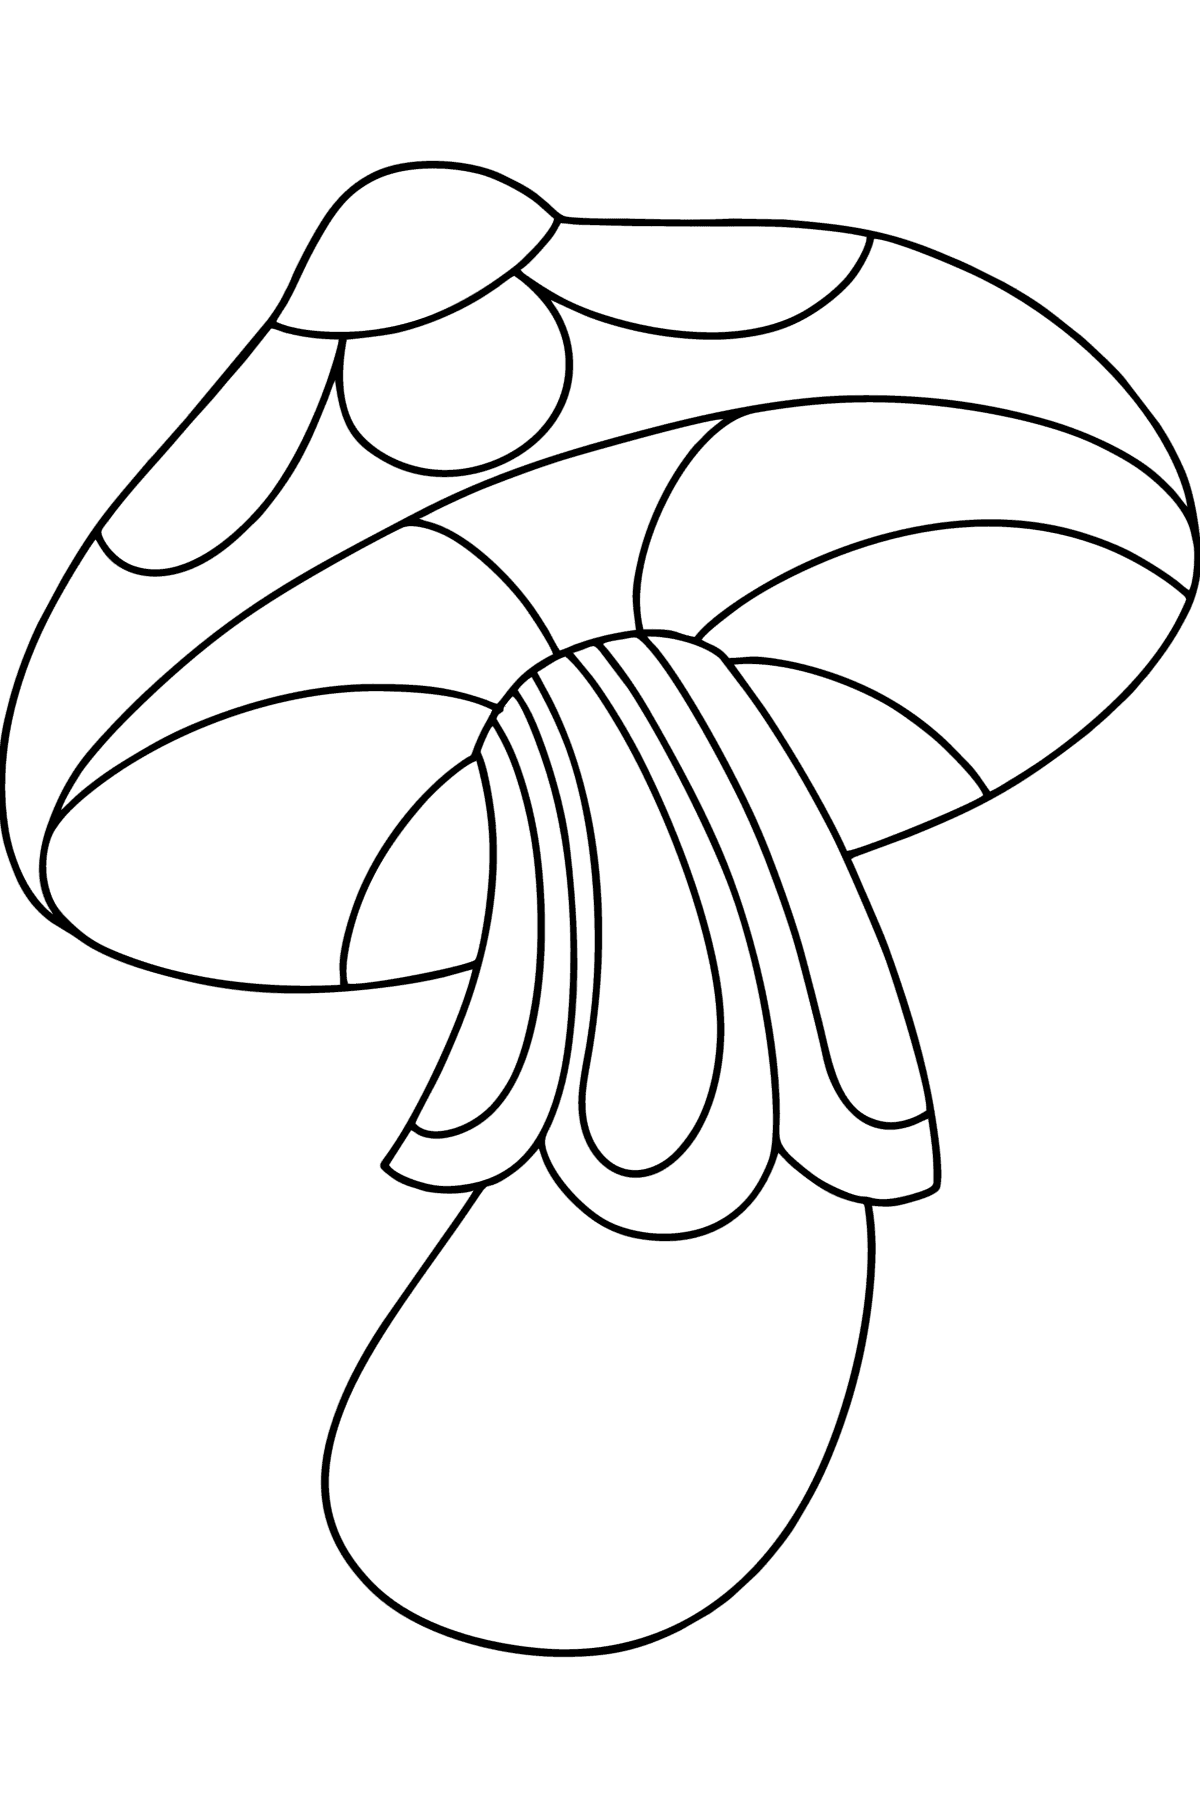 Dibujo para colorear de hongos zentangle - Dibujos para Colorear para Niños